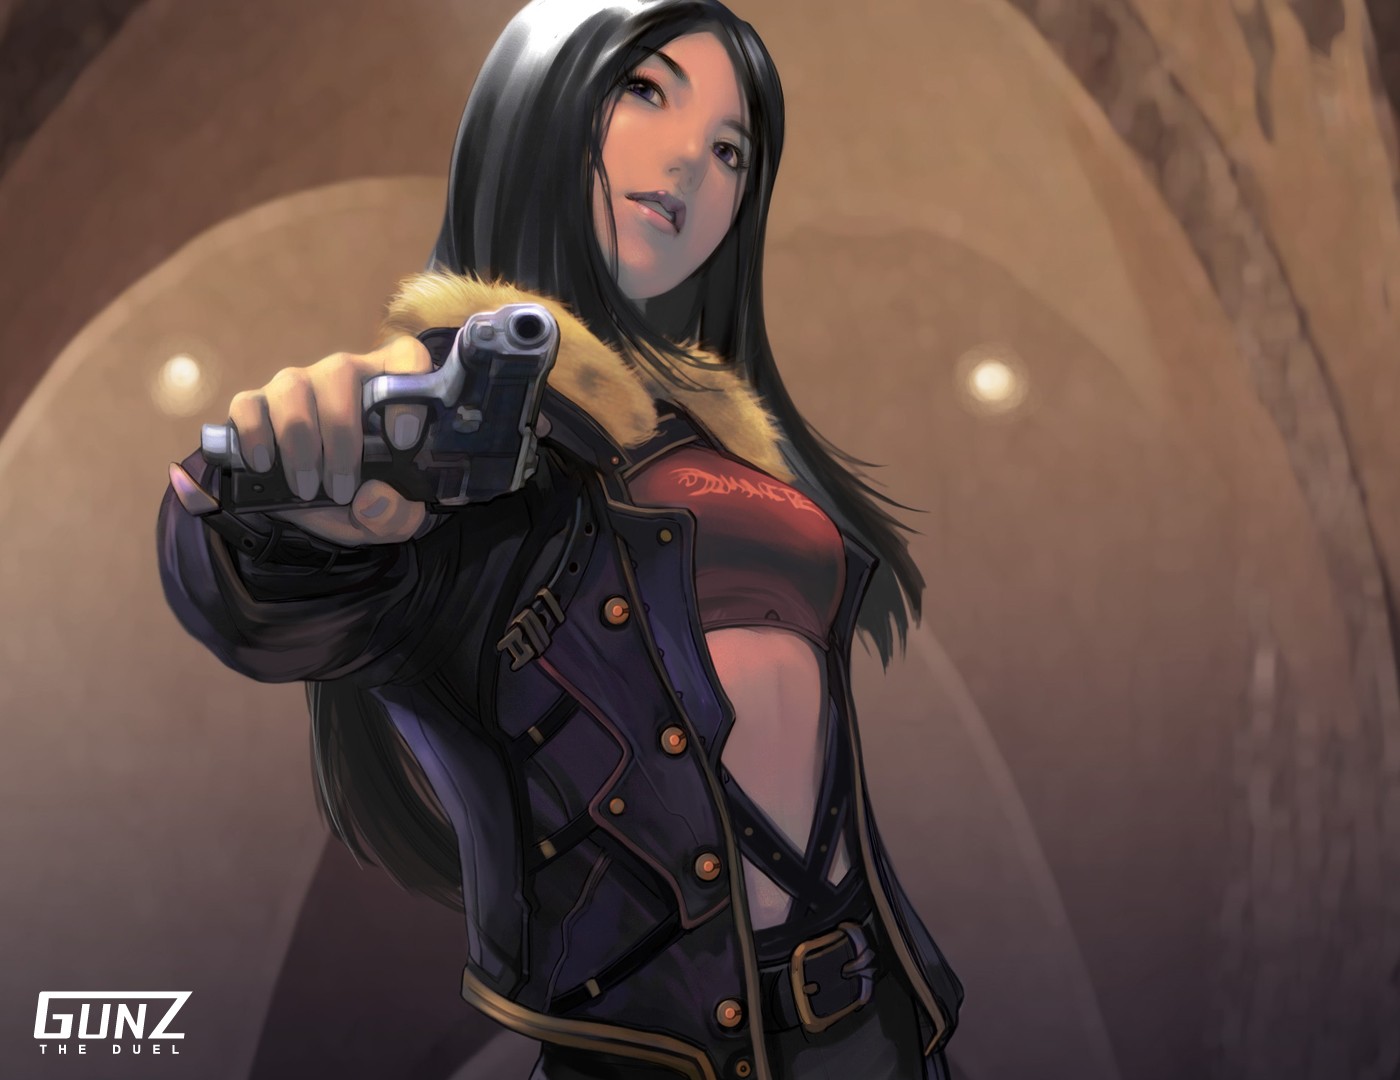 Gunz Tactical Game Gun Online Women Artwork Looking At Viewer Girls With Guns Gunz The Duel 1400x1080